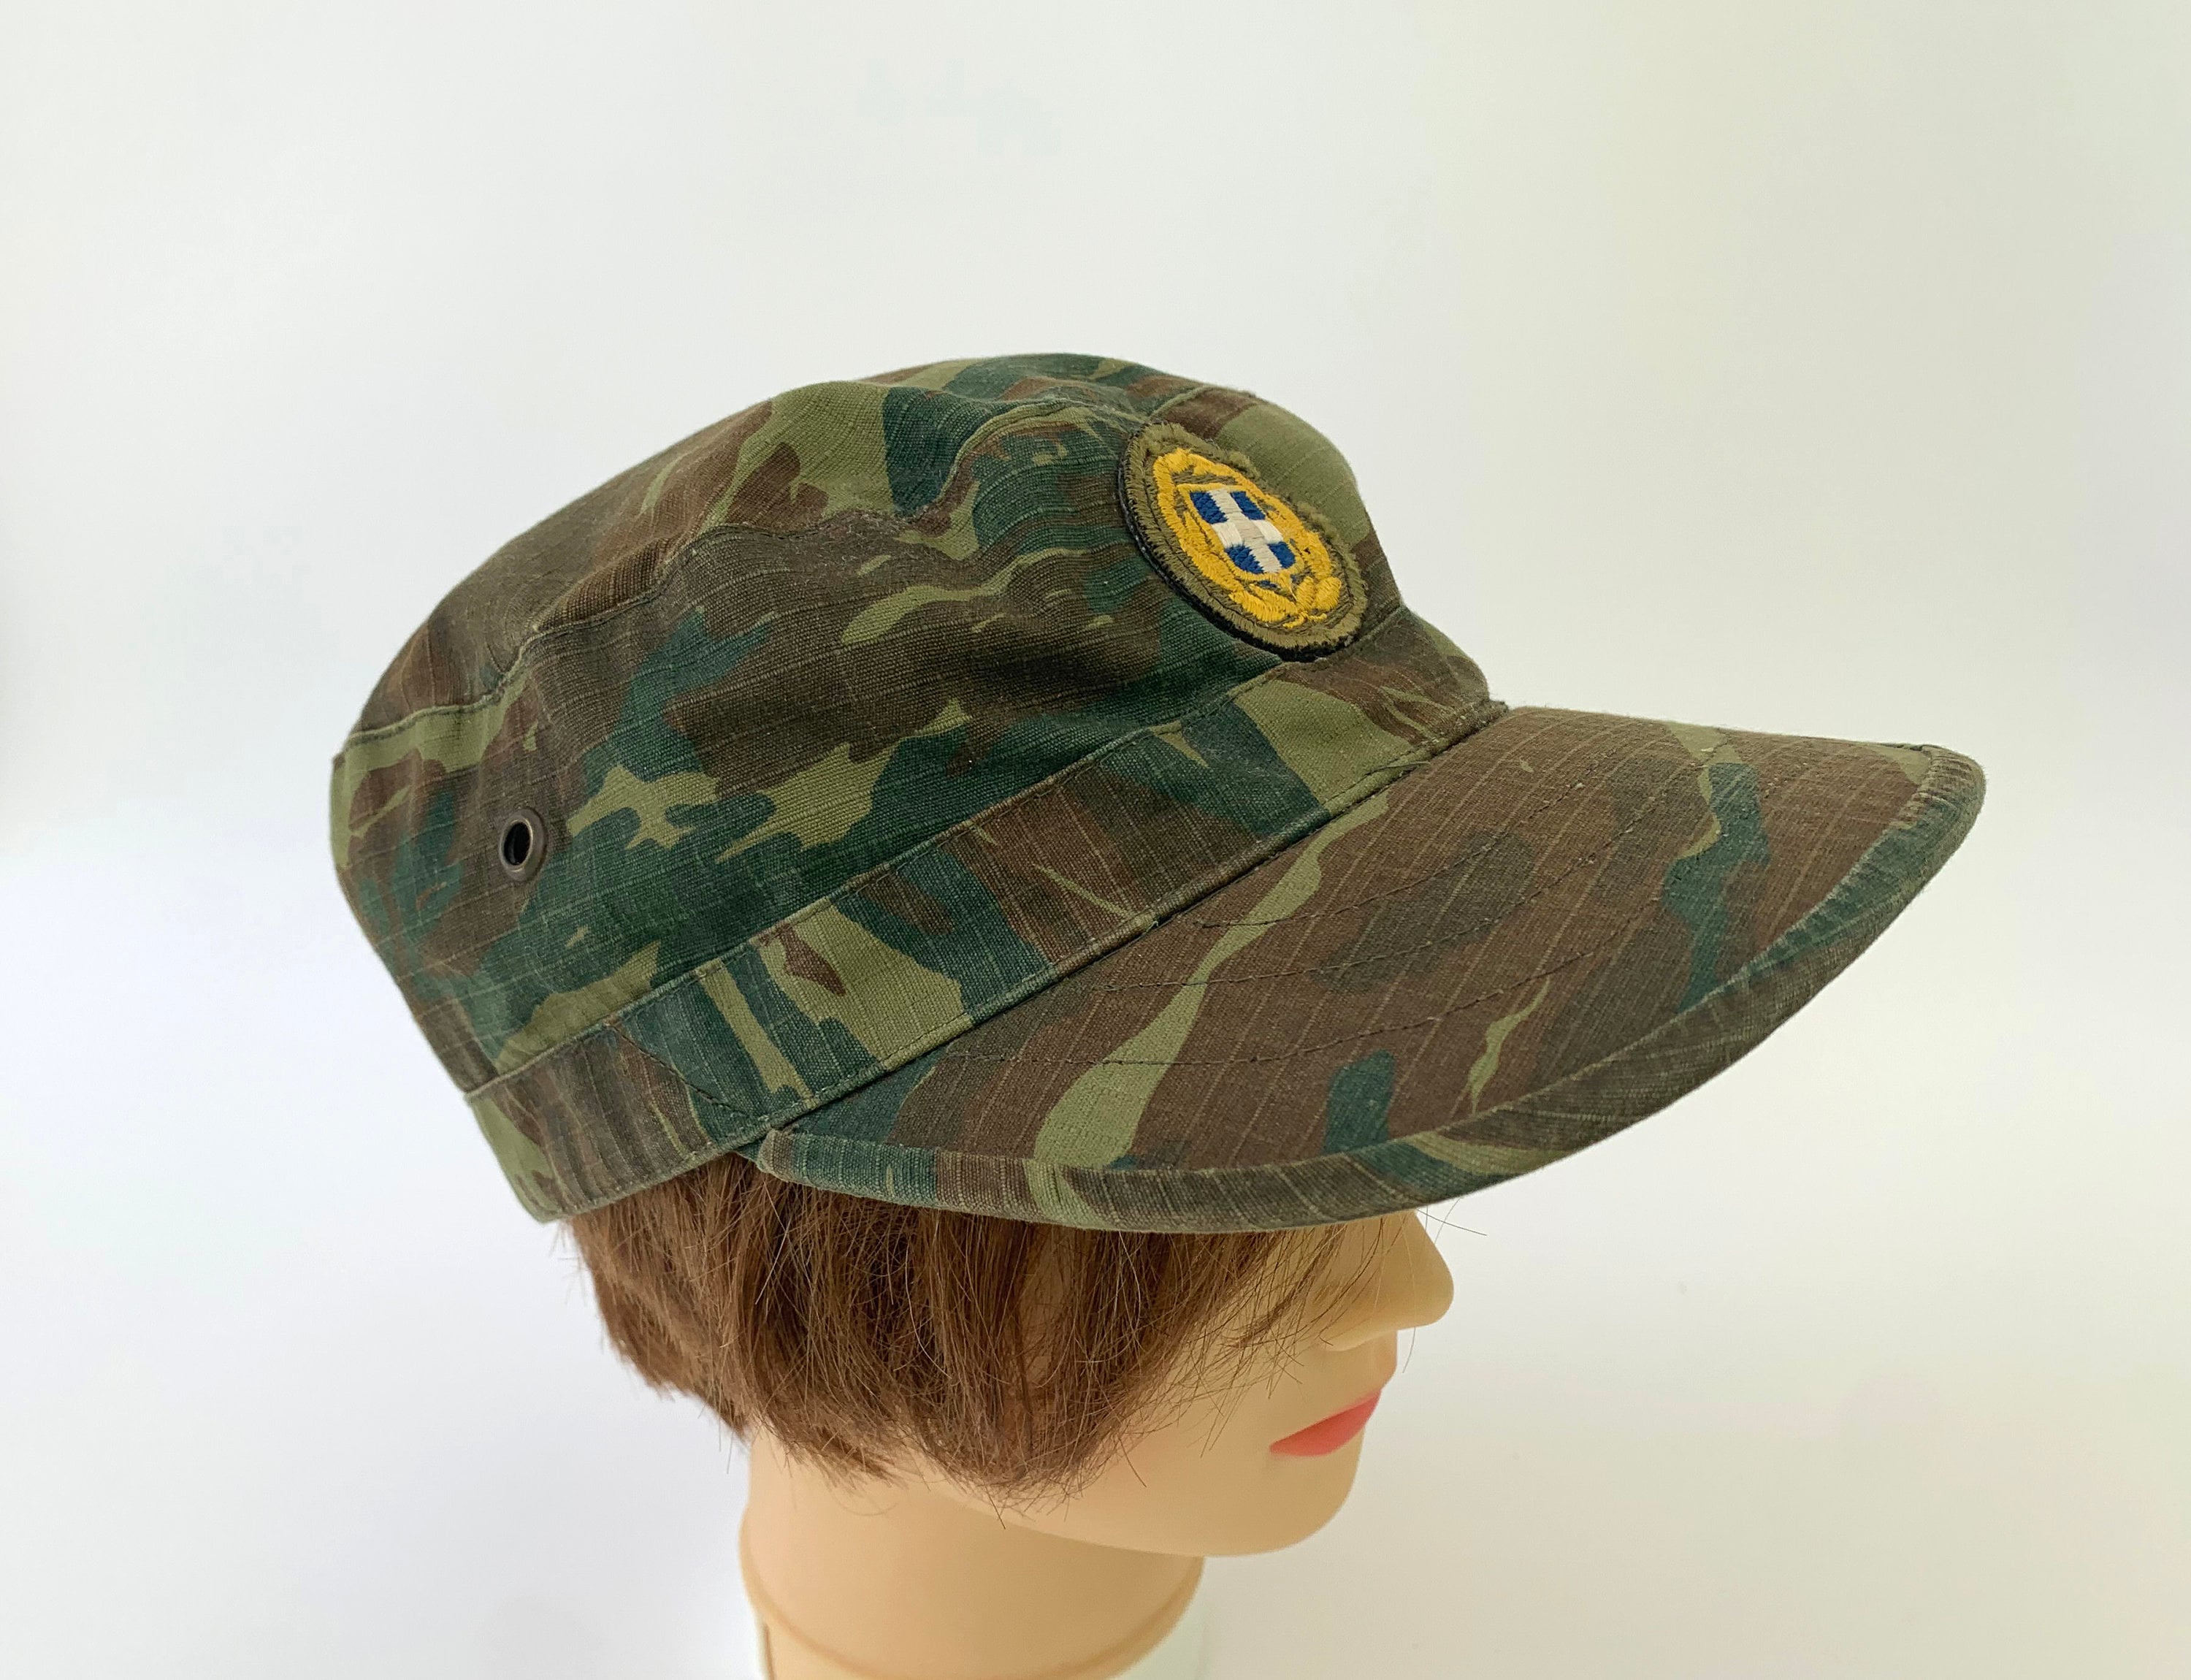 Accesorios Sombreros y gorras Sombreros de vestir Sombreros de copa sombrero de soldado del ejército militar sombrero de soldado sin usar con forro de cuero sombrero de lona verde de la década de 1970 Sombrero vintage 